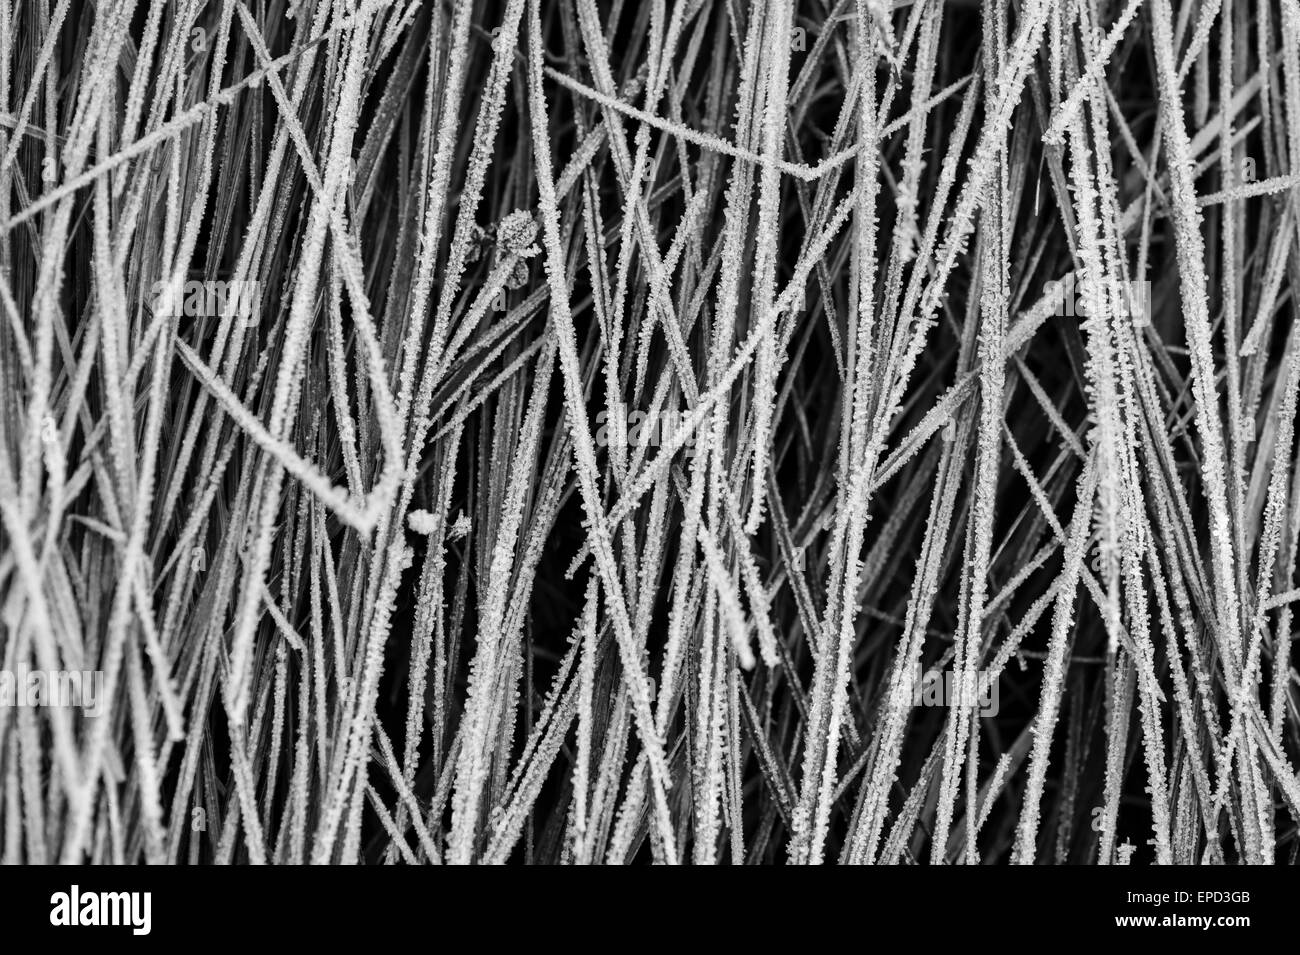 Close-up de schémas d'herbe congelé Banque D'Images